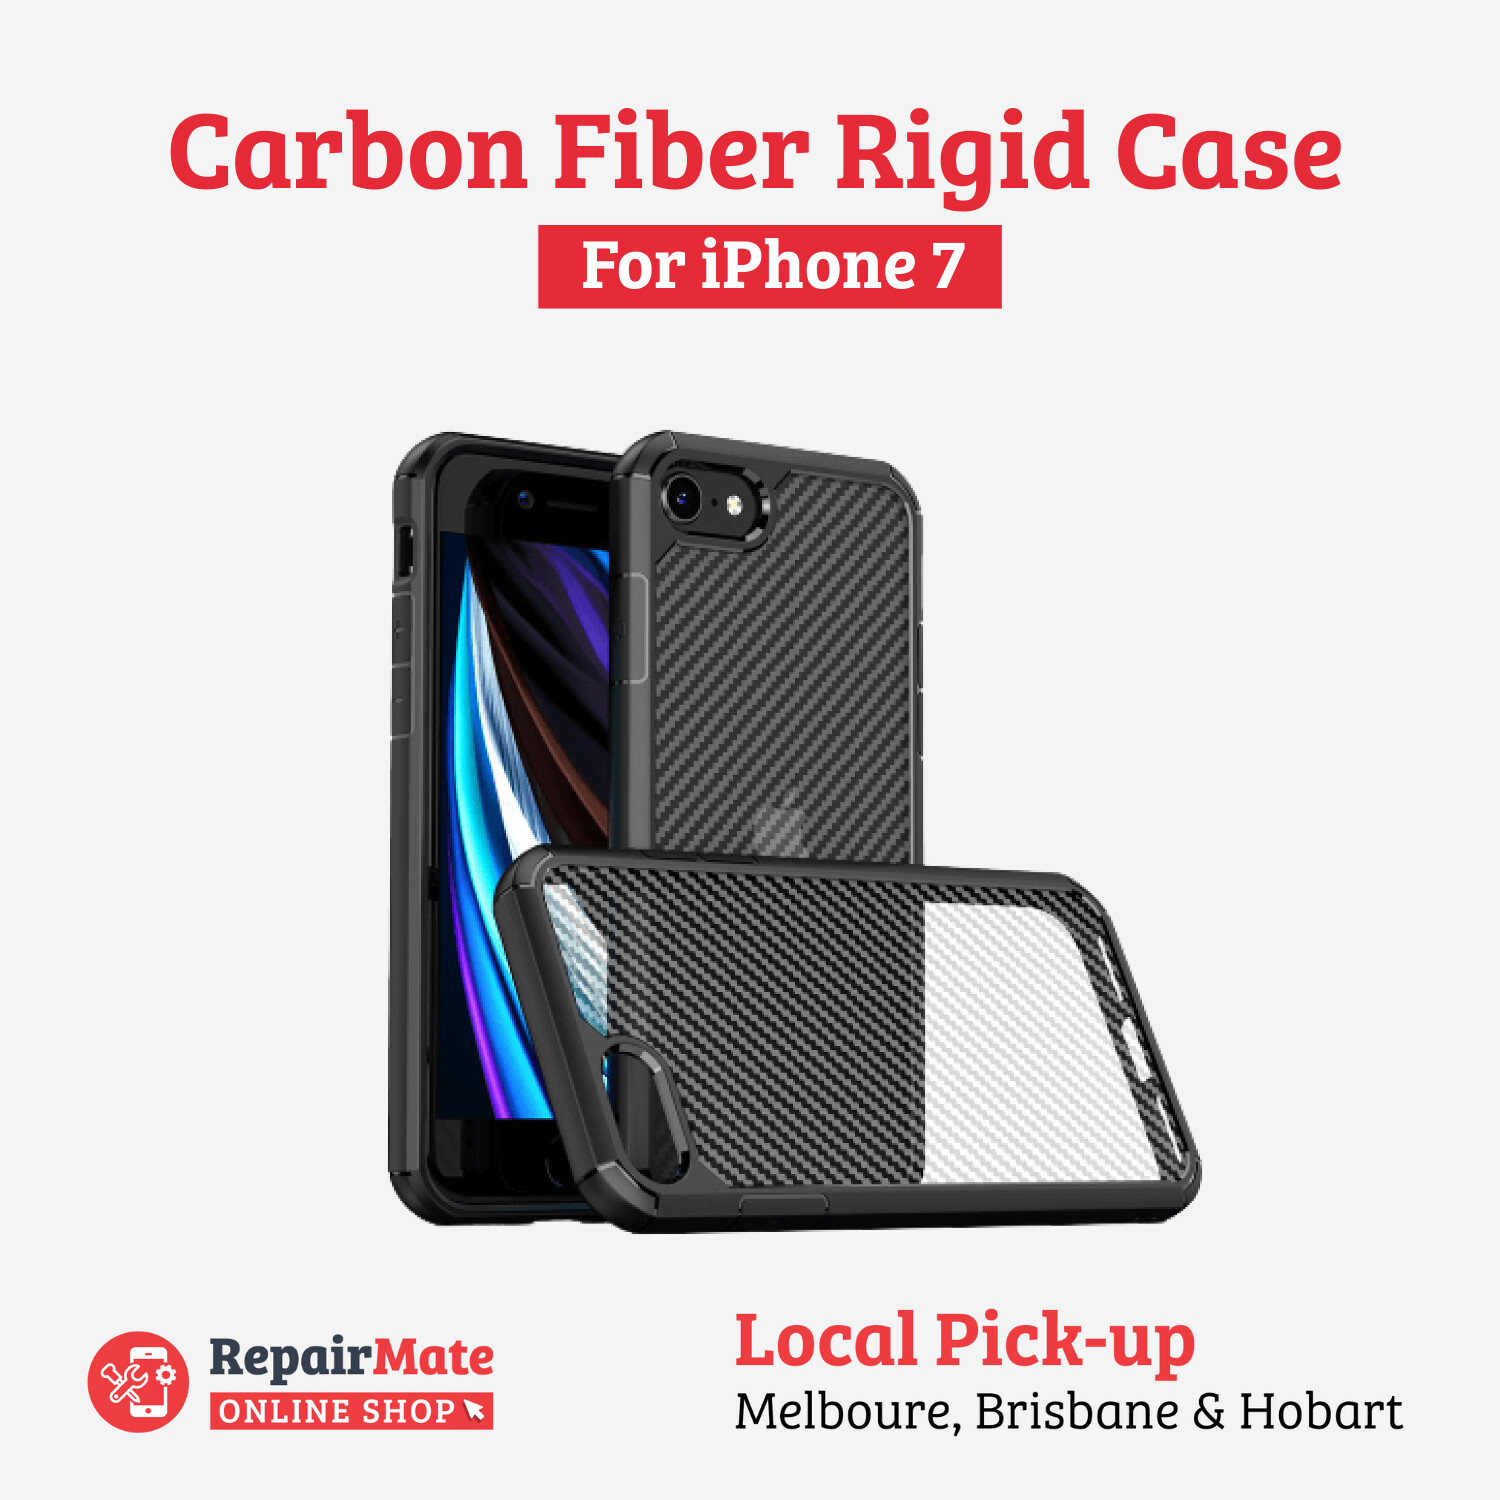 iPhone 7 Carbon Fiber Rigid Case Cover